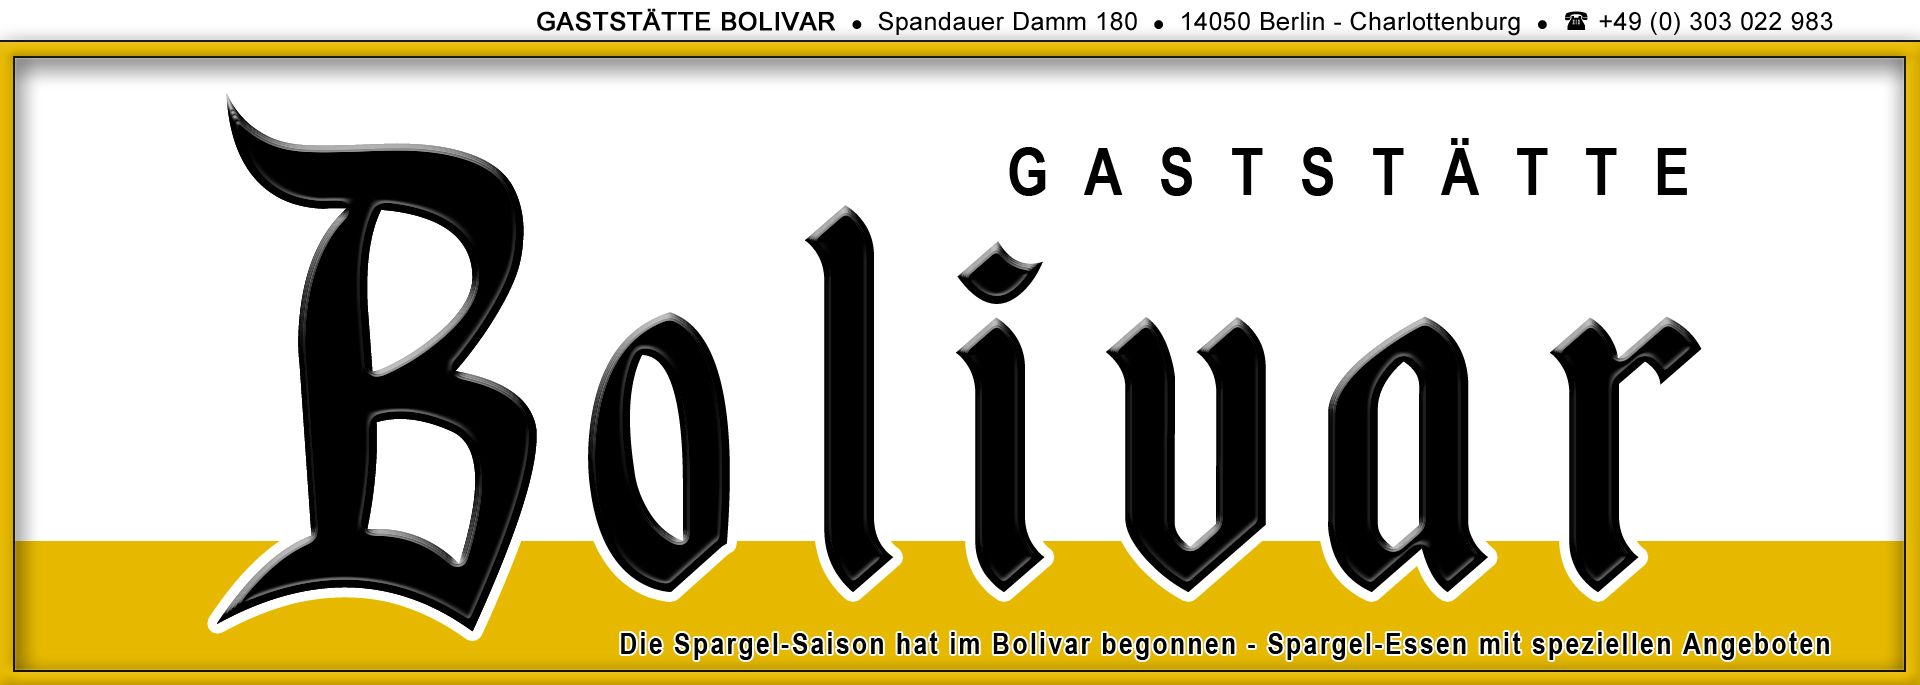 Spargel-Essen in Berlin - Charlottenburg, im Kiez vom Westend - mit super Angeboten im Bolivar